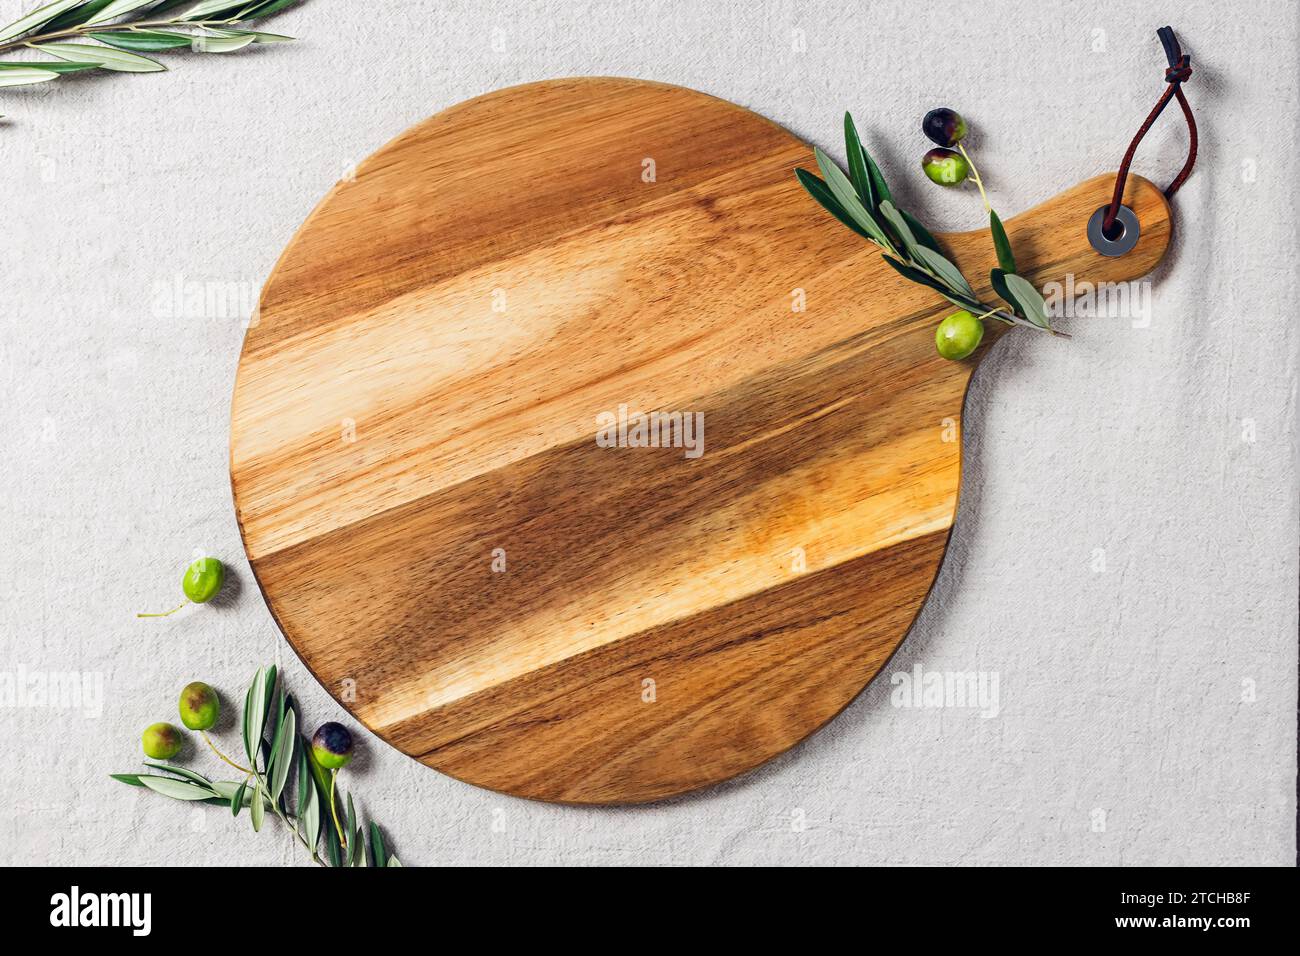 Cercle en bois de coupe ou de service, olives et branches d'olivier, modèle pour l'affichage du produit Banque D'Images